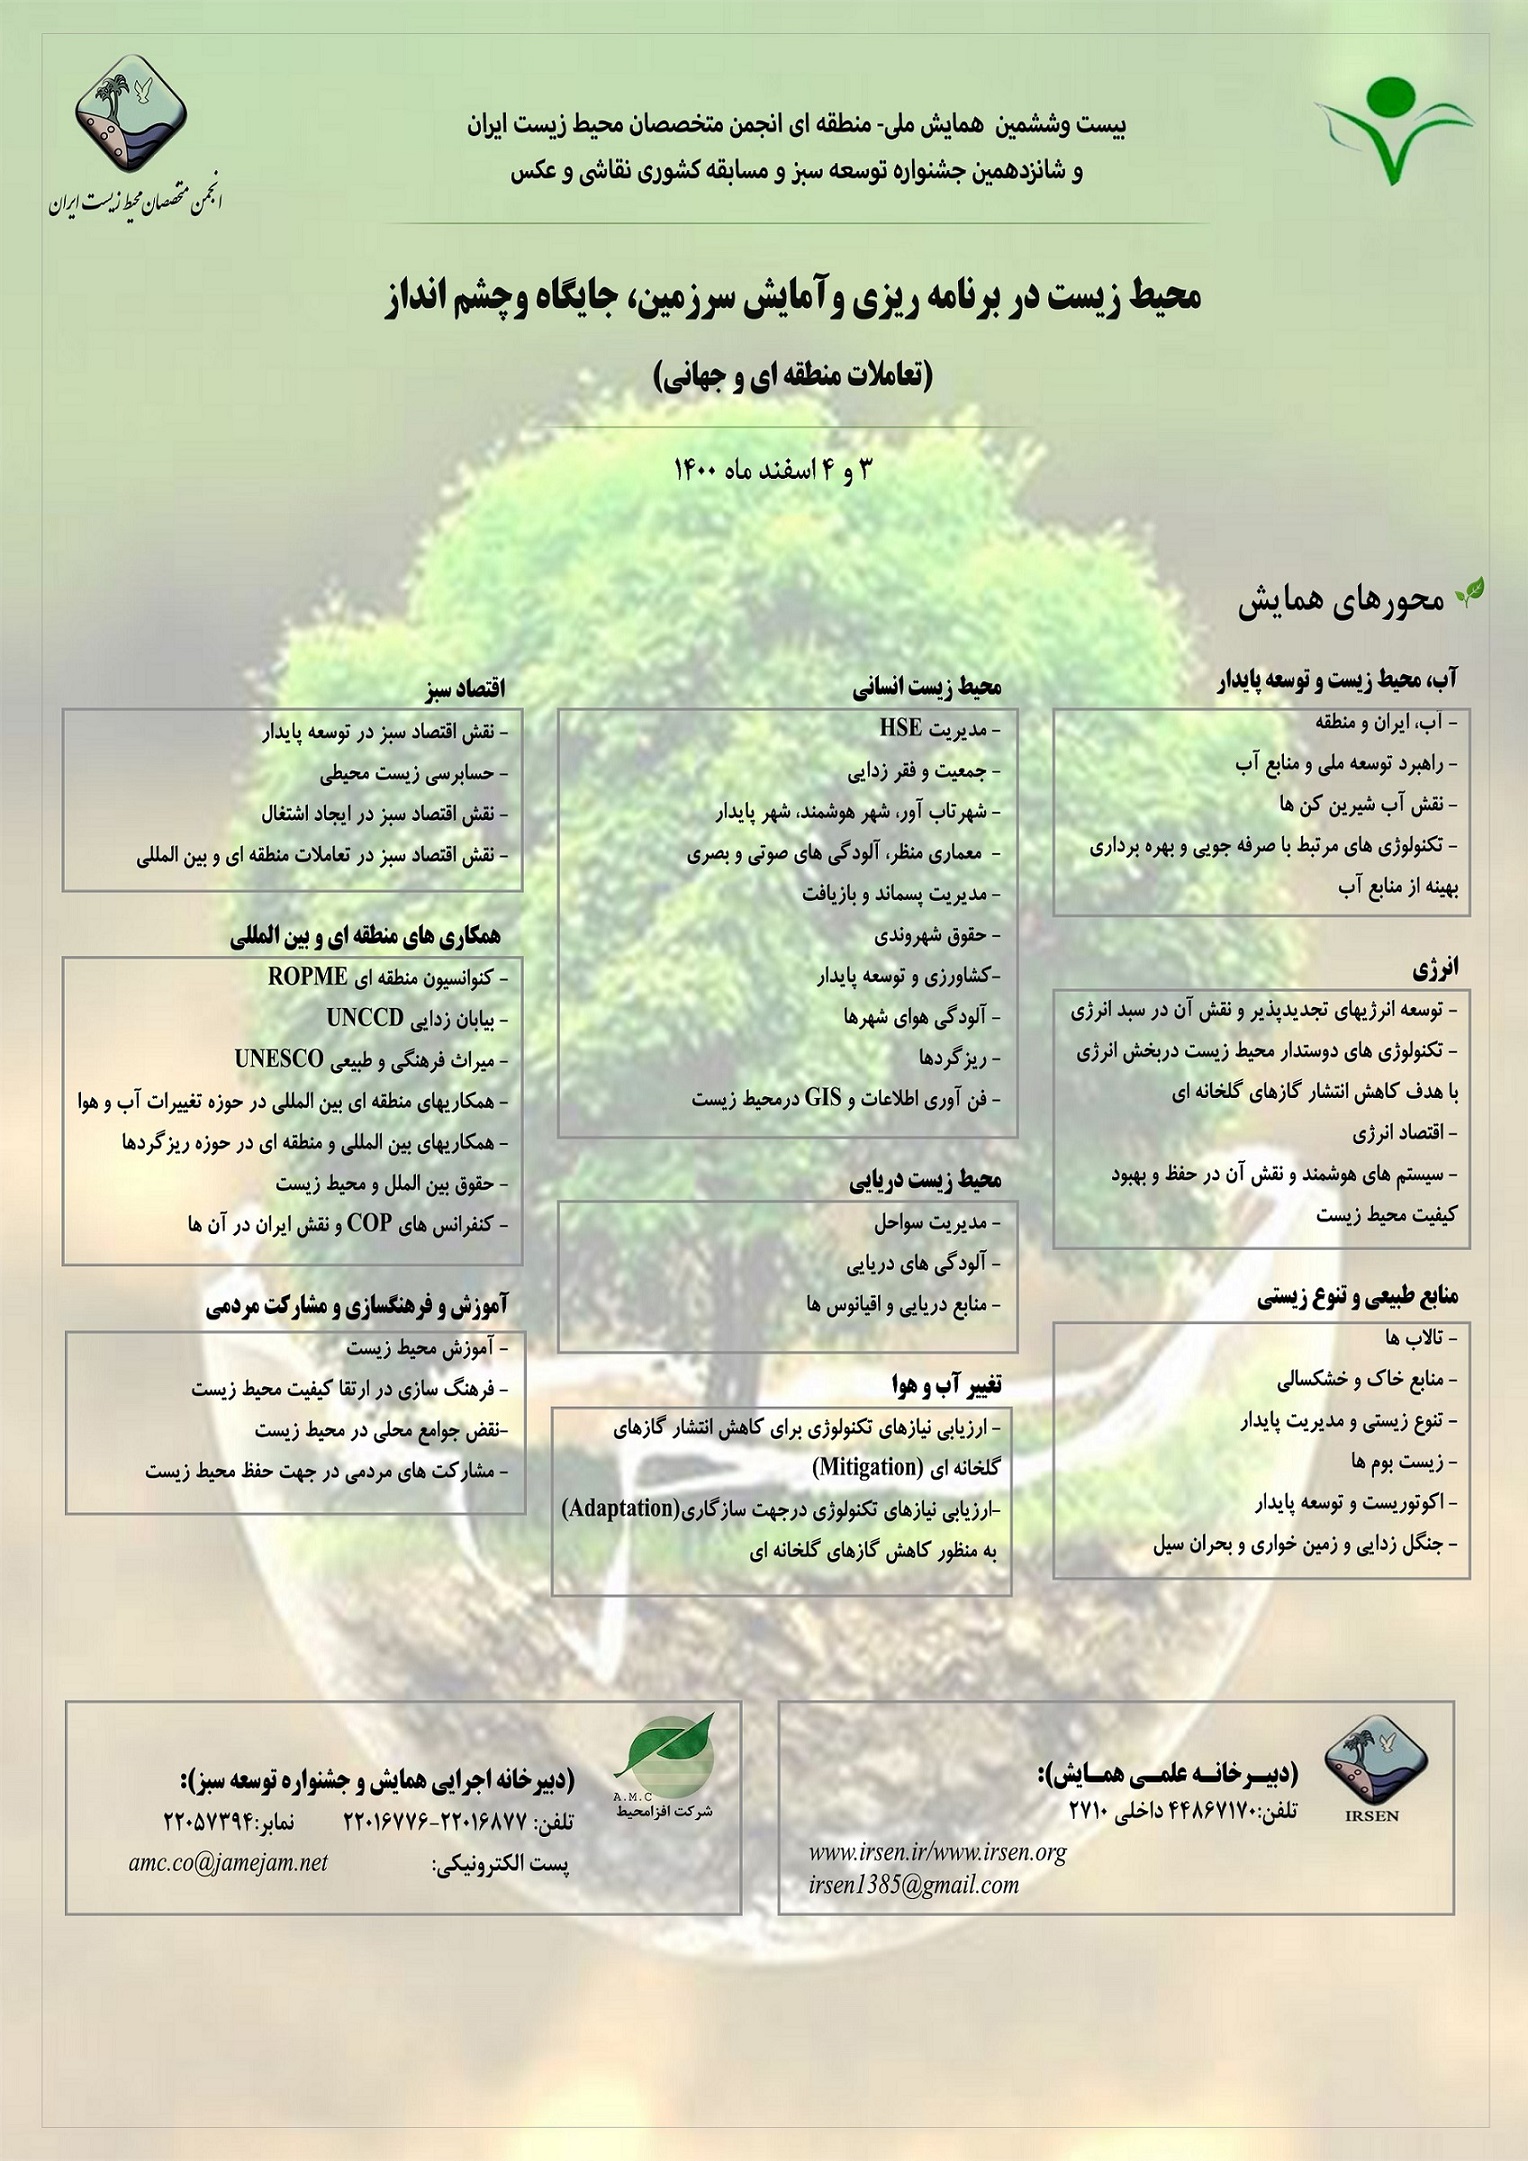 بیست-و-ششمین-همایش-ملی-منطقه-ای-انجمن-متخصصان-محیط-زیست-ایران-و-شانزدهمین-جشنواره-توسعه-سبز-و-مسابقه-کشوری-نقاشی-و-عکس